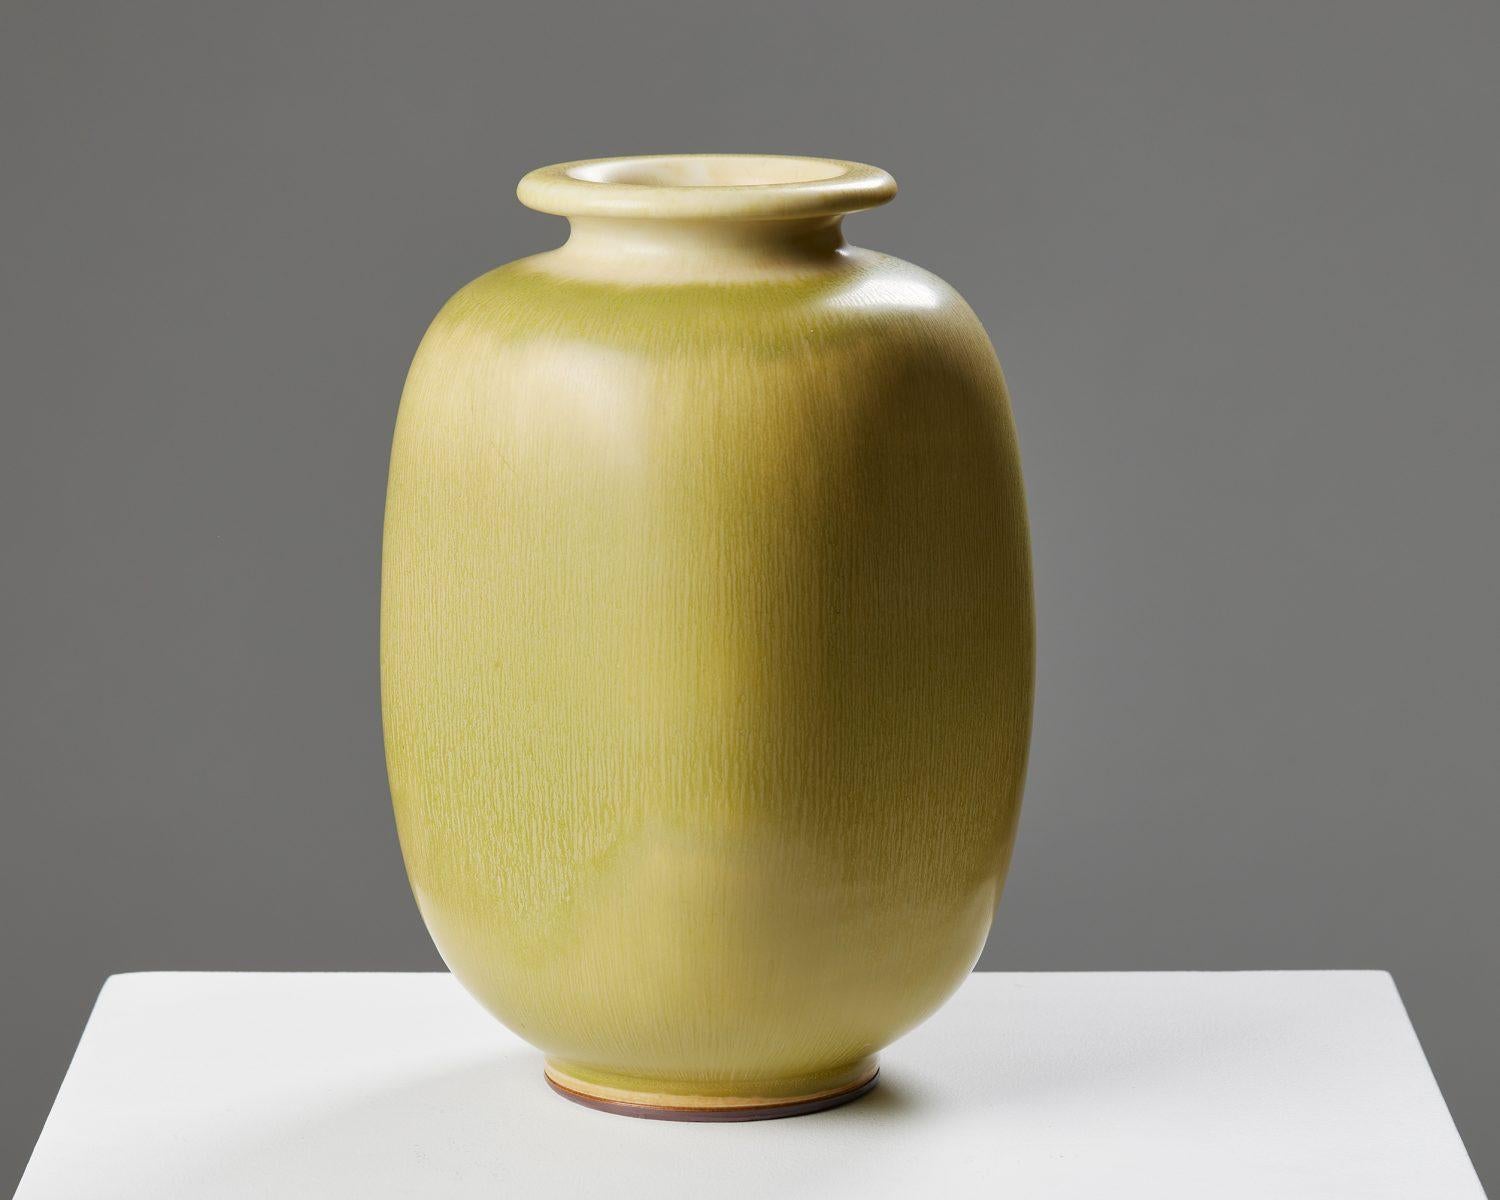 Vase conçu par Berndt Friberg pour Gustavsberg, 
Suède. 1950s.

Grès.

Signé.

Mesures :
H : 25,5 cm
Diamètre : 18 cm.

Berndt Friberg est né dans la ville de Townes, dans le sud de la Suède. Il est issu d'une longue lignée de céramistes, dans une